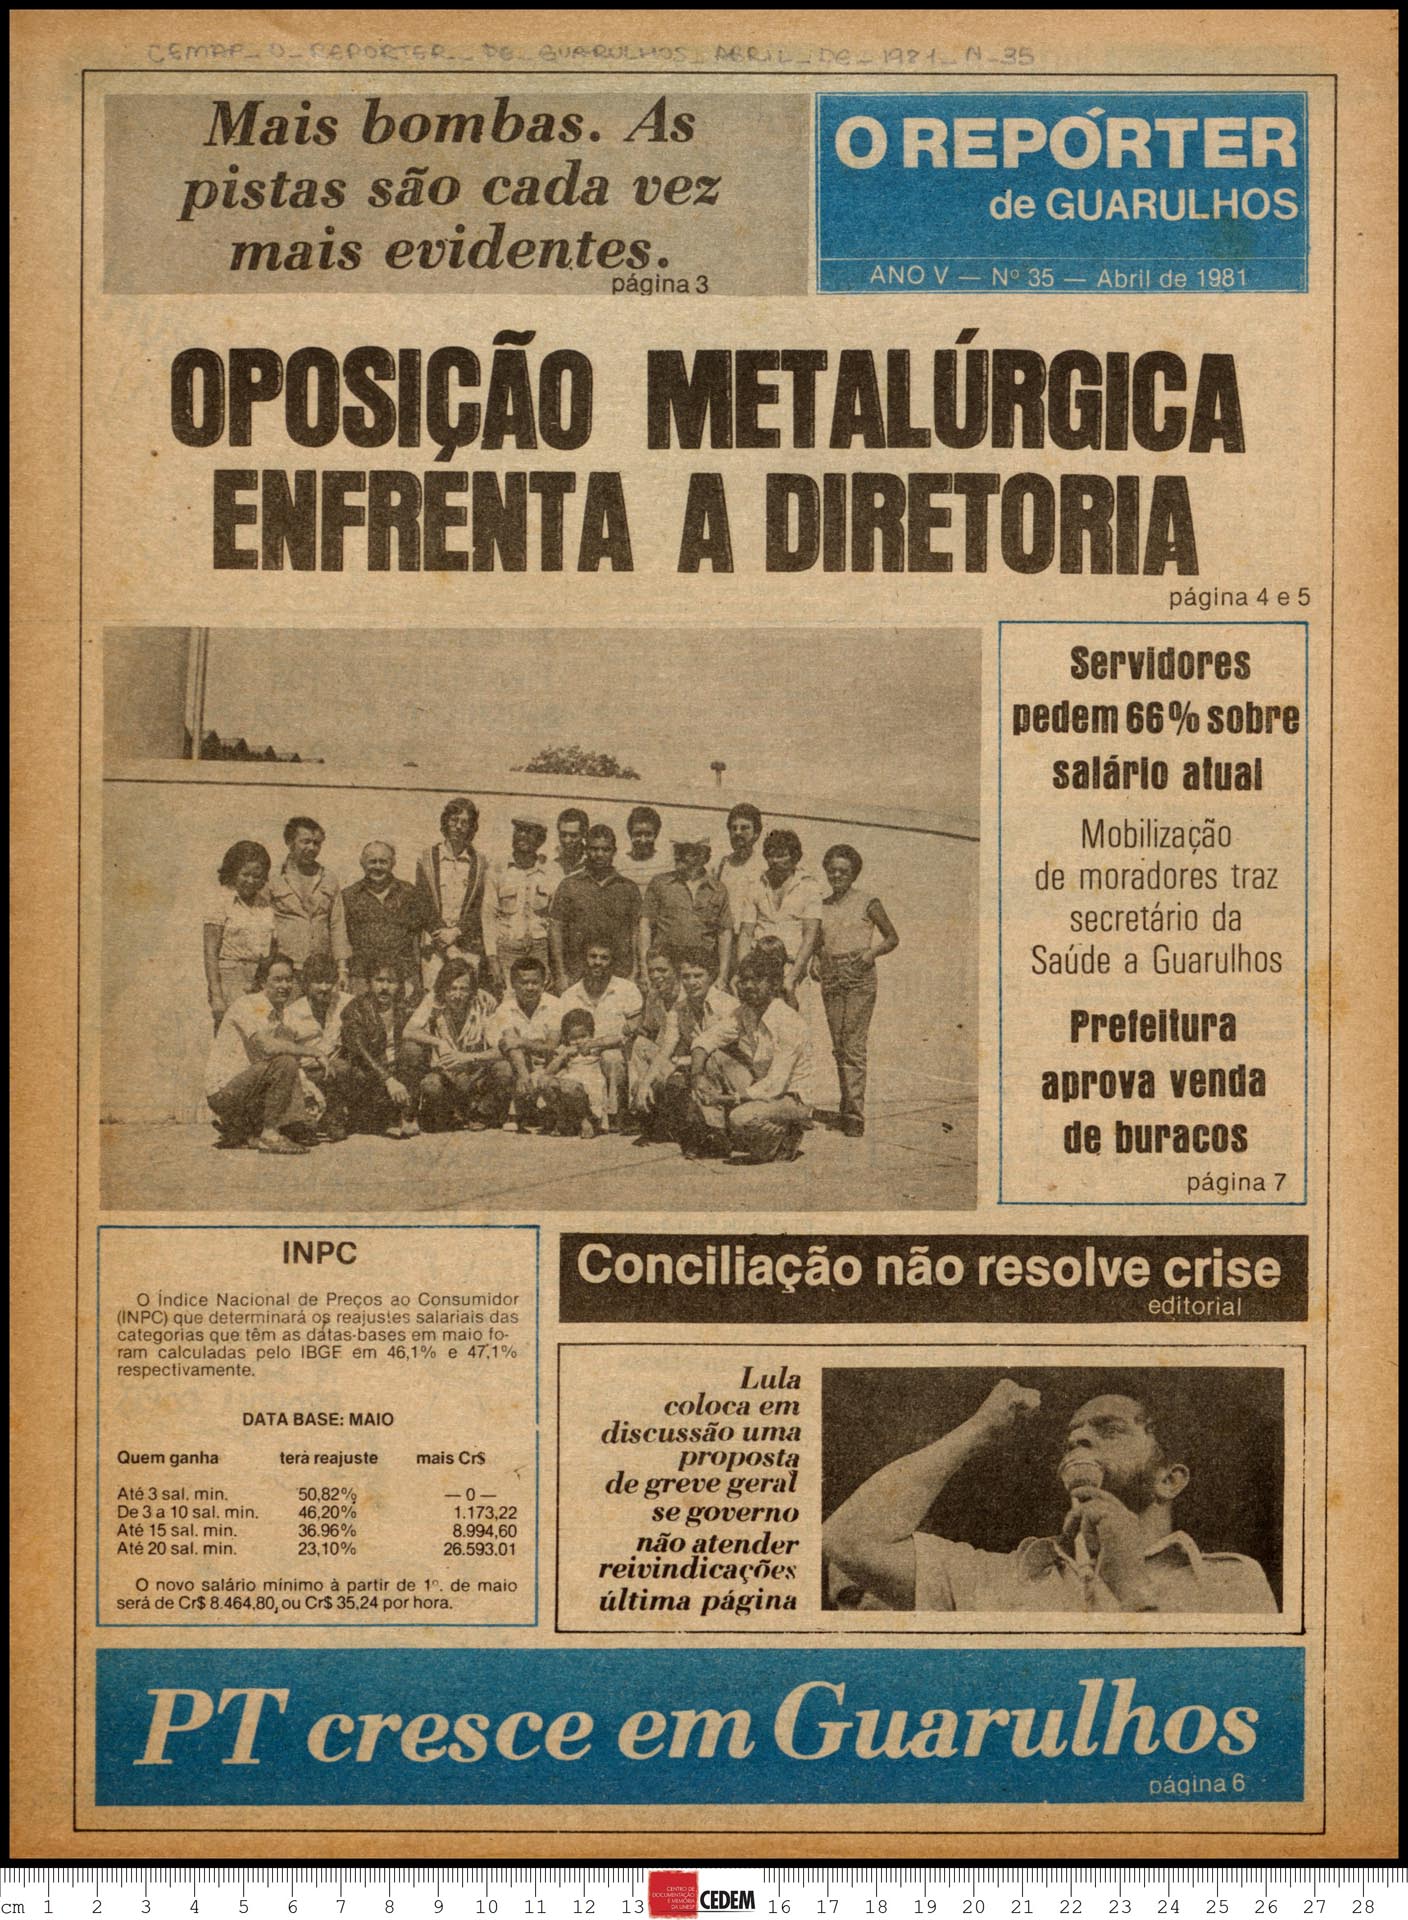 O reportér de Guarulhos - 35 - abr. 1981